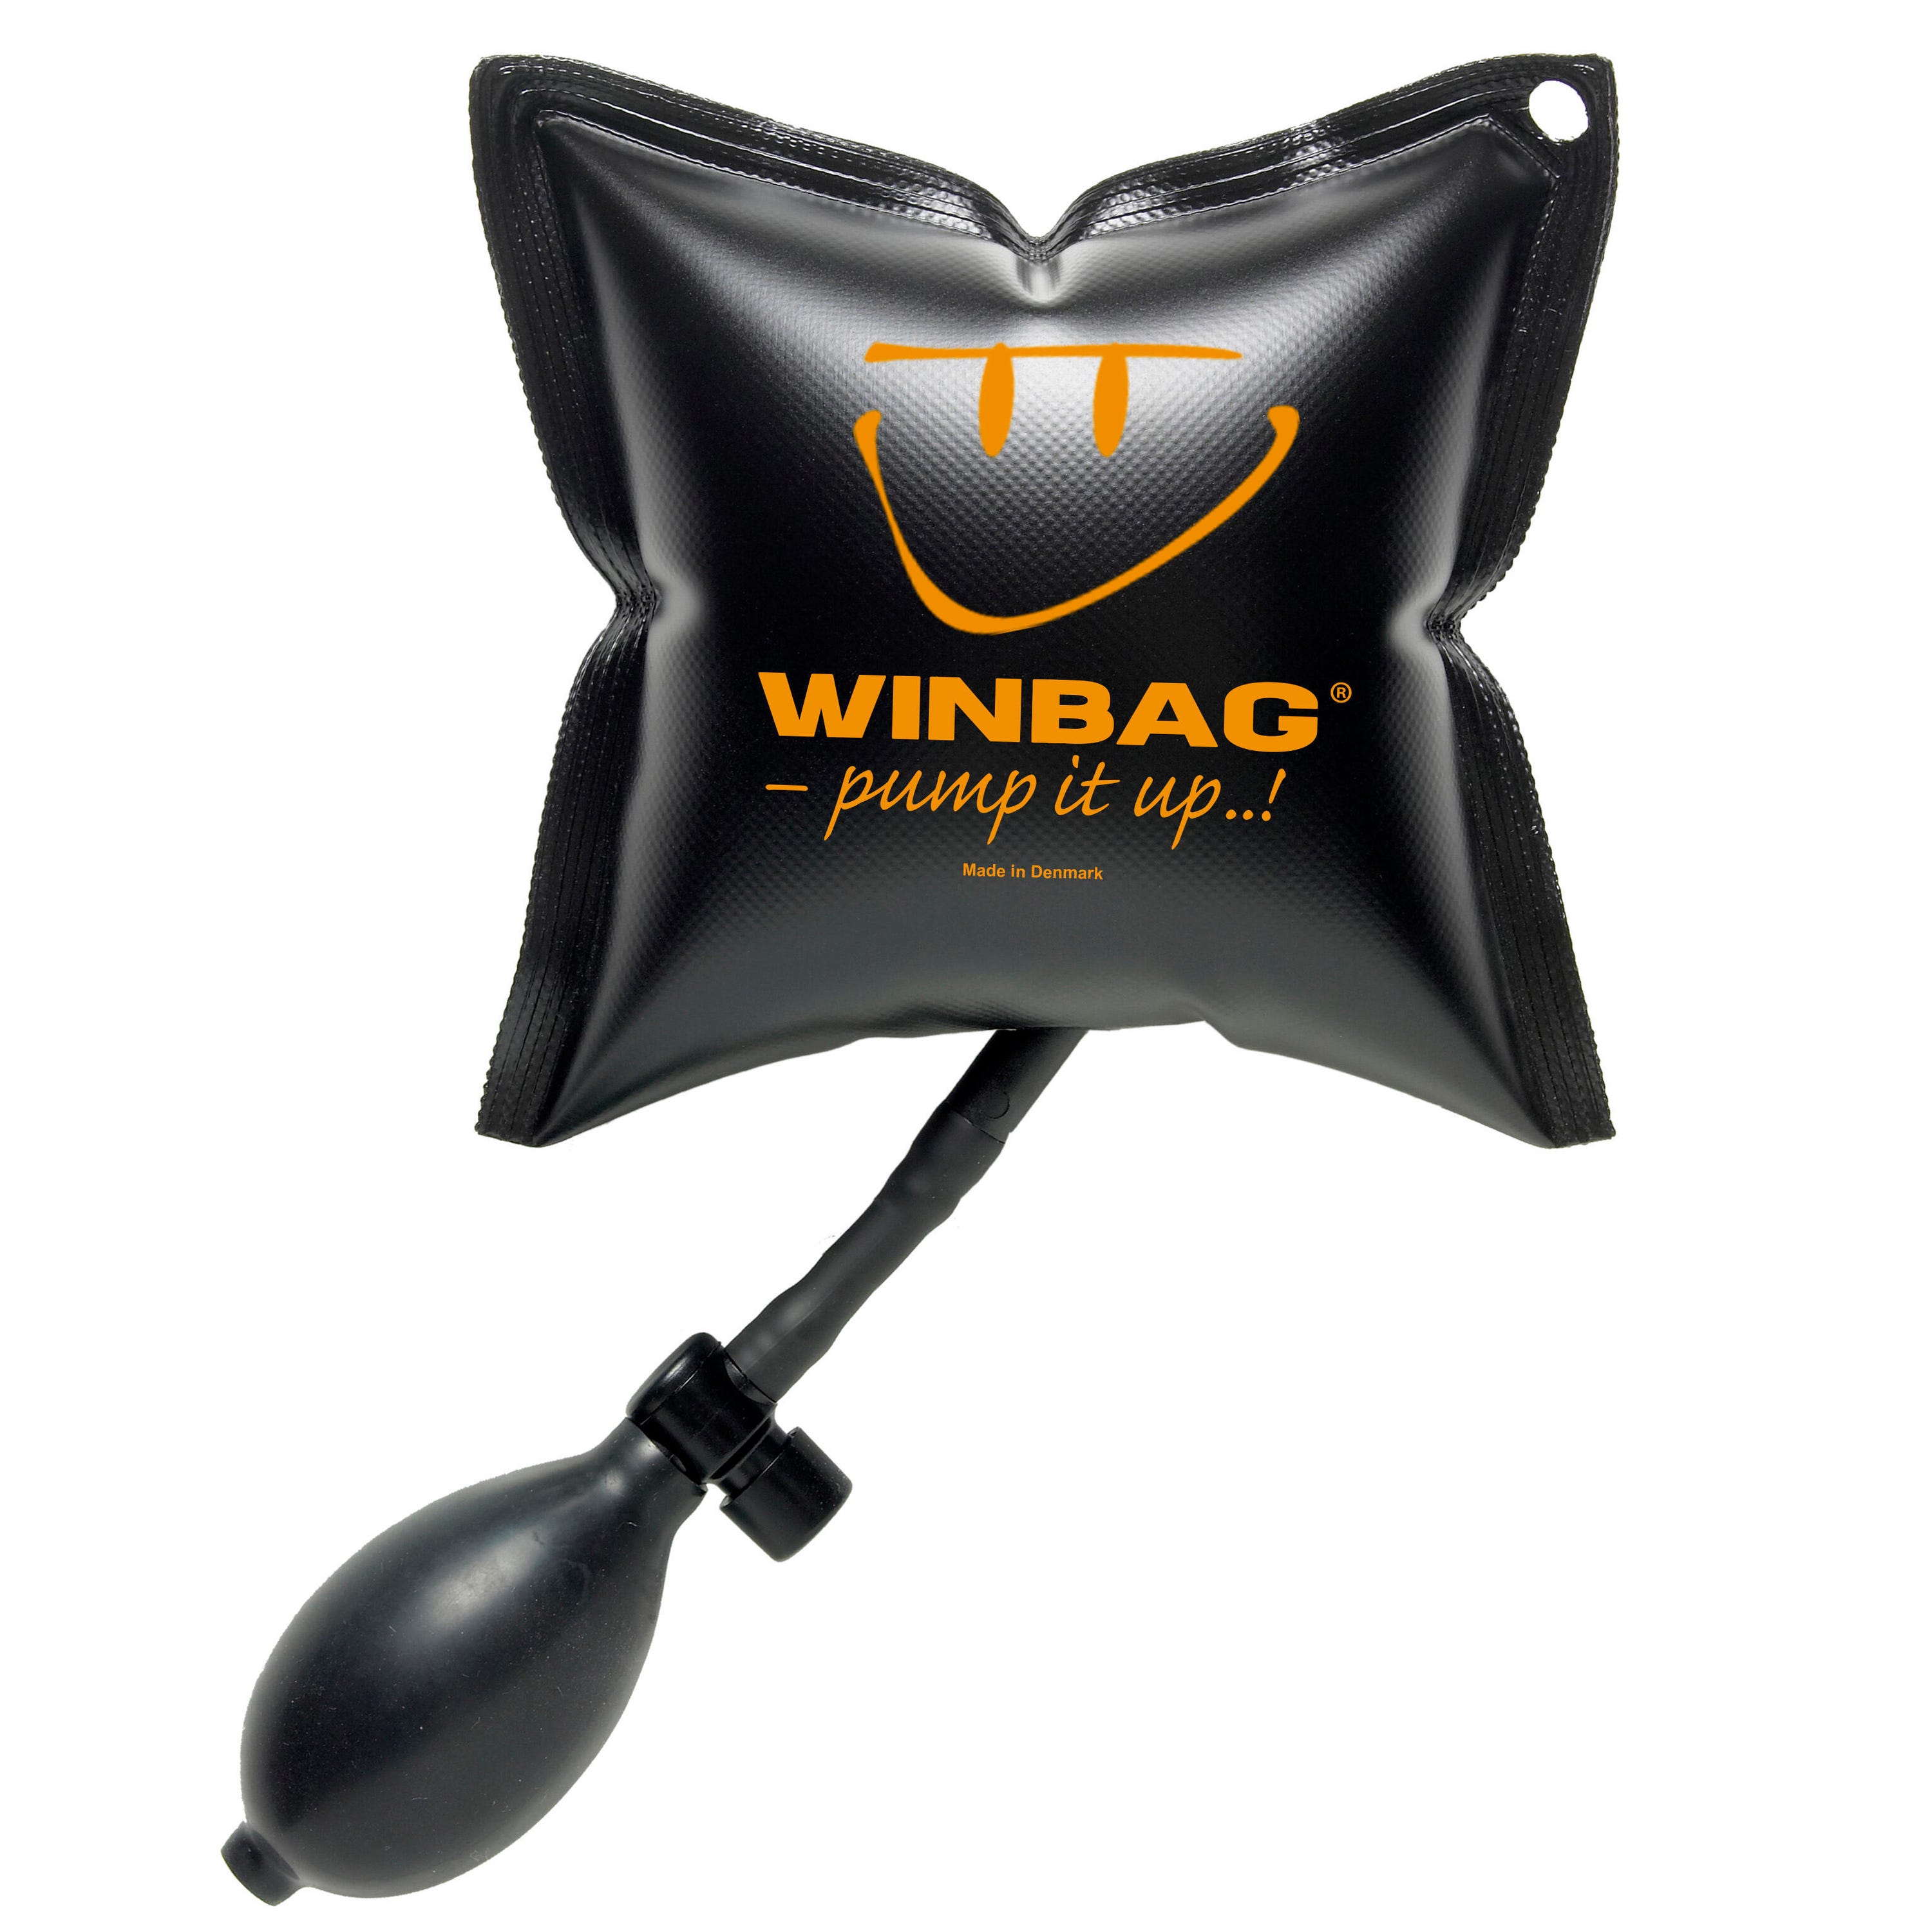 Acheter le coussin gonflable de levage Winbag en ligne